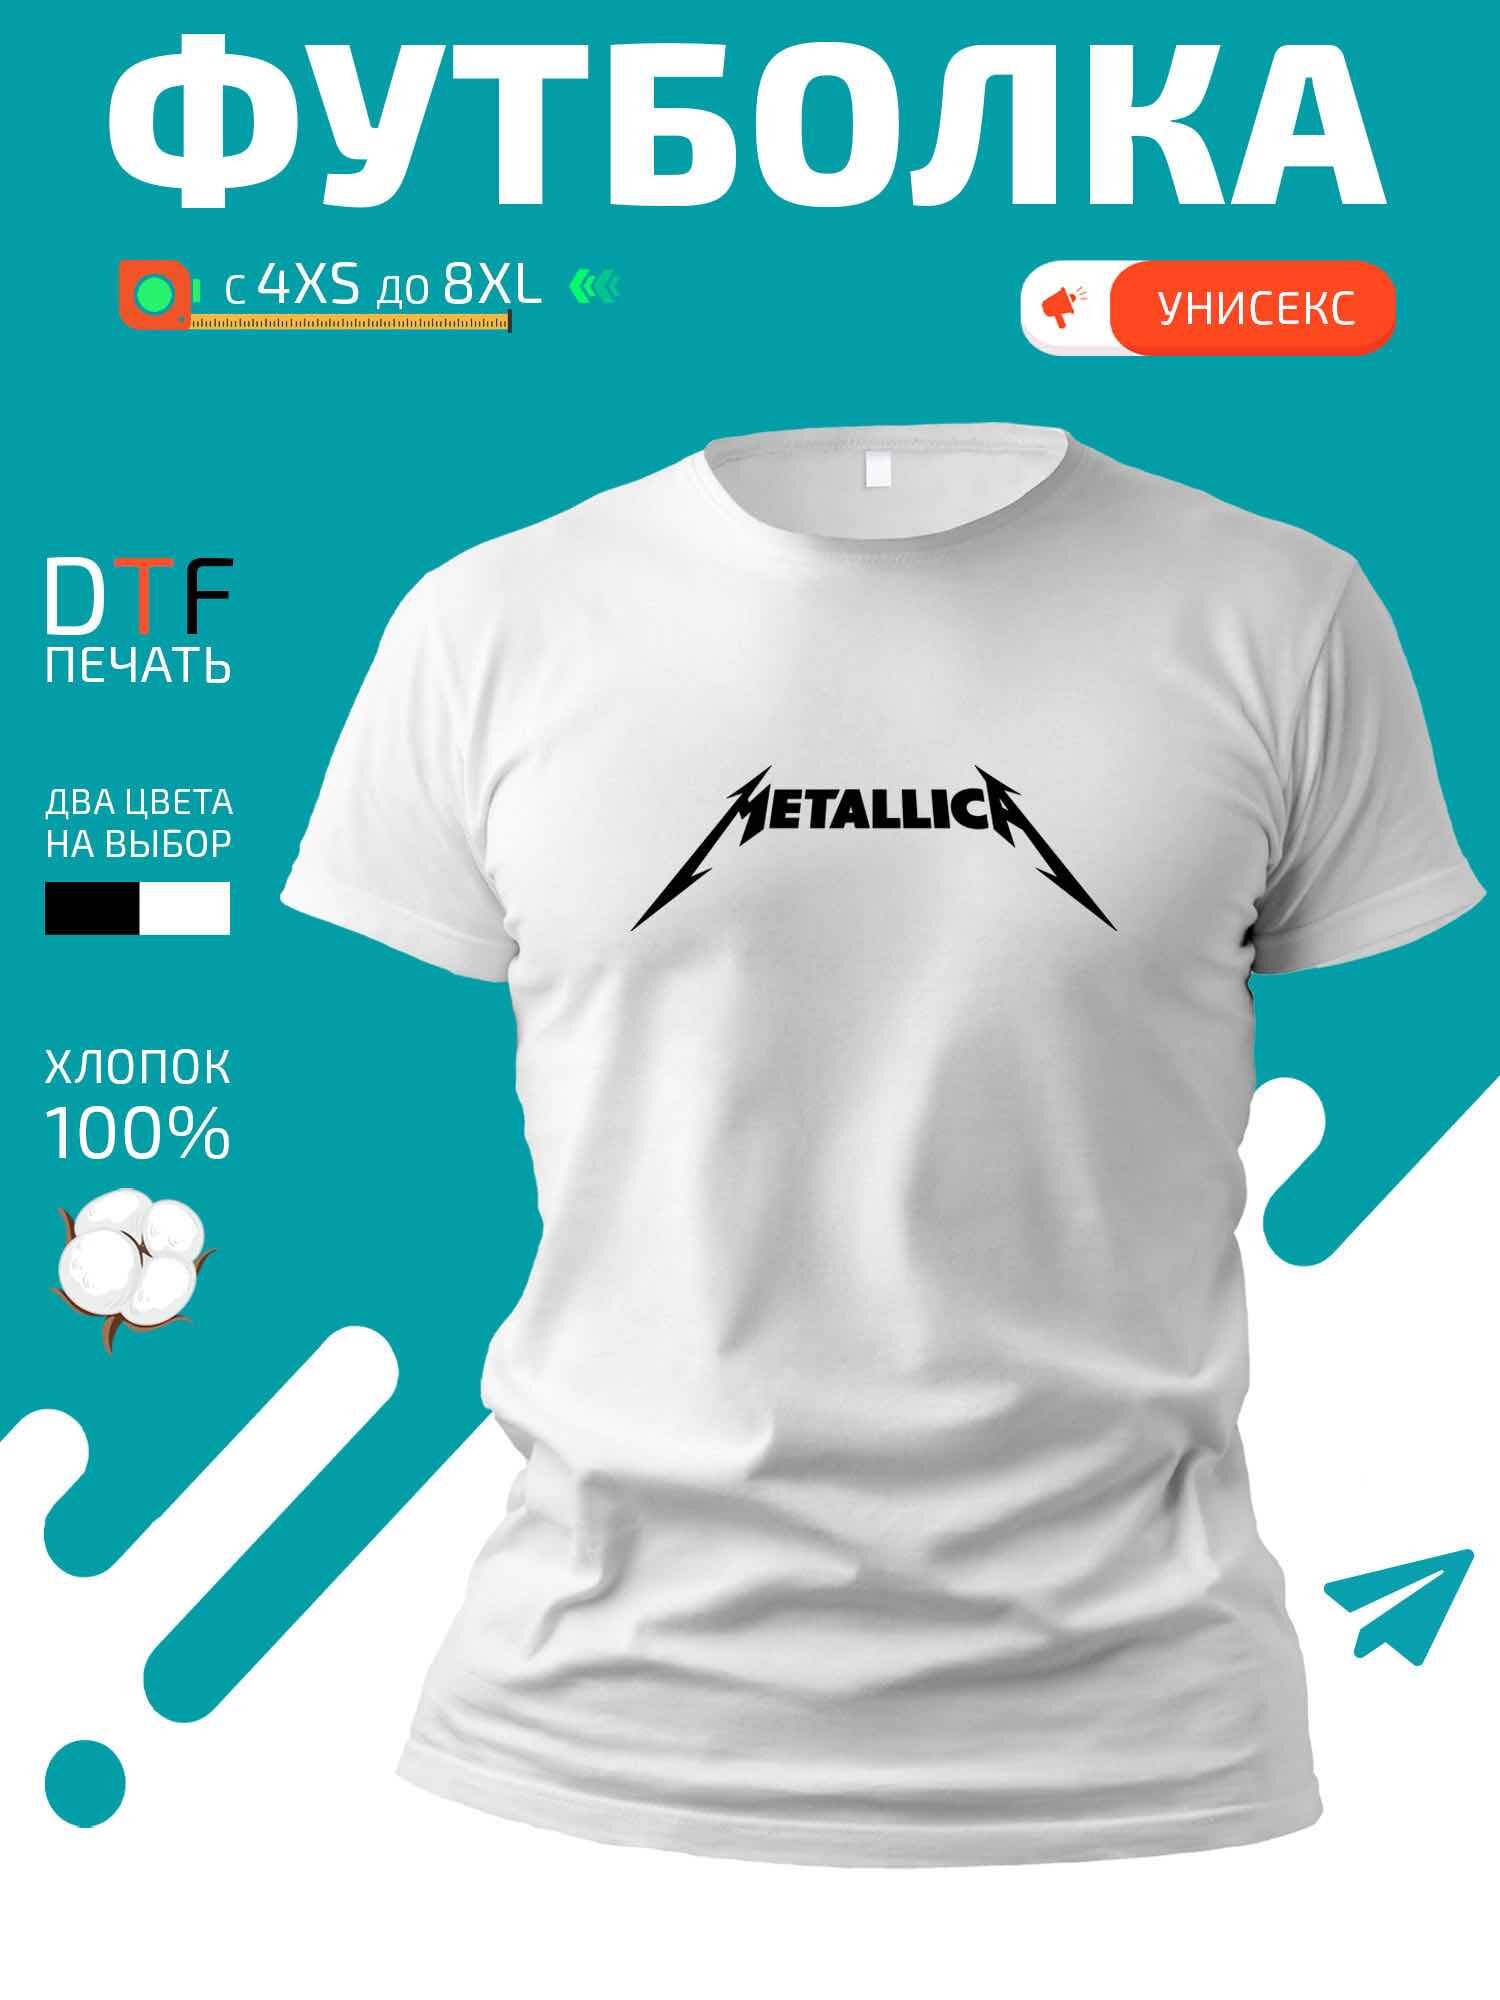 Футболка логотип Metallica